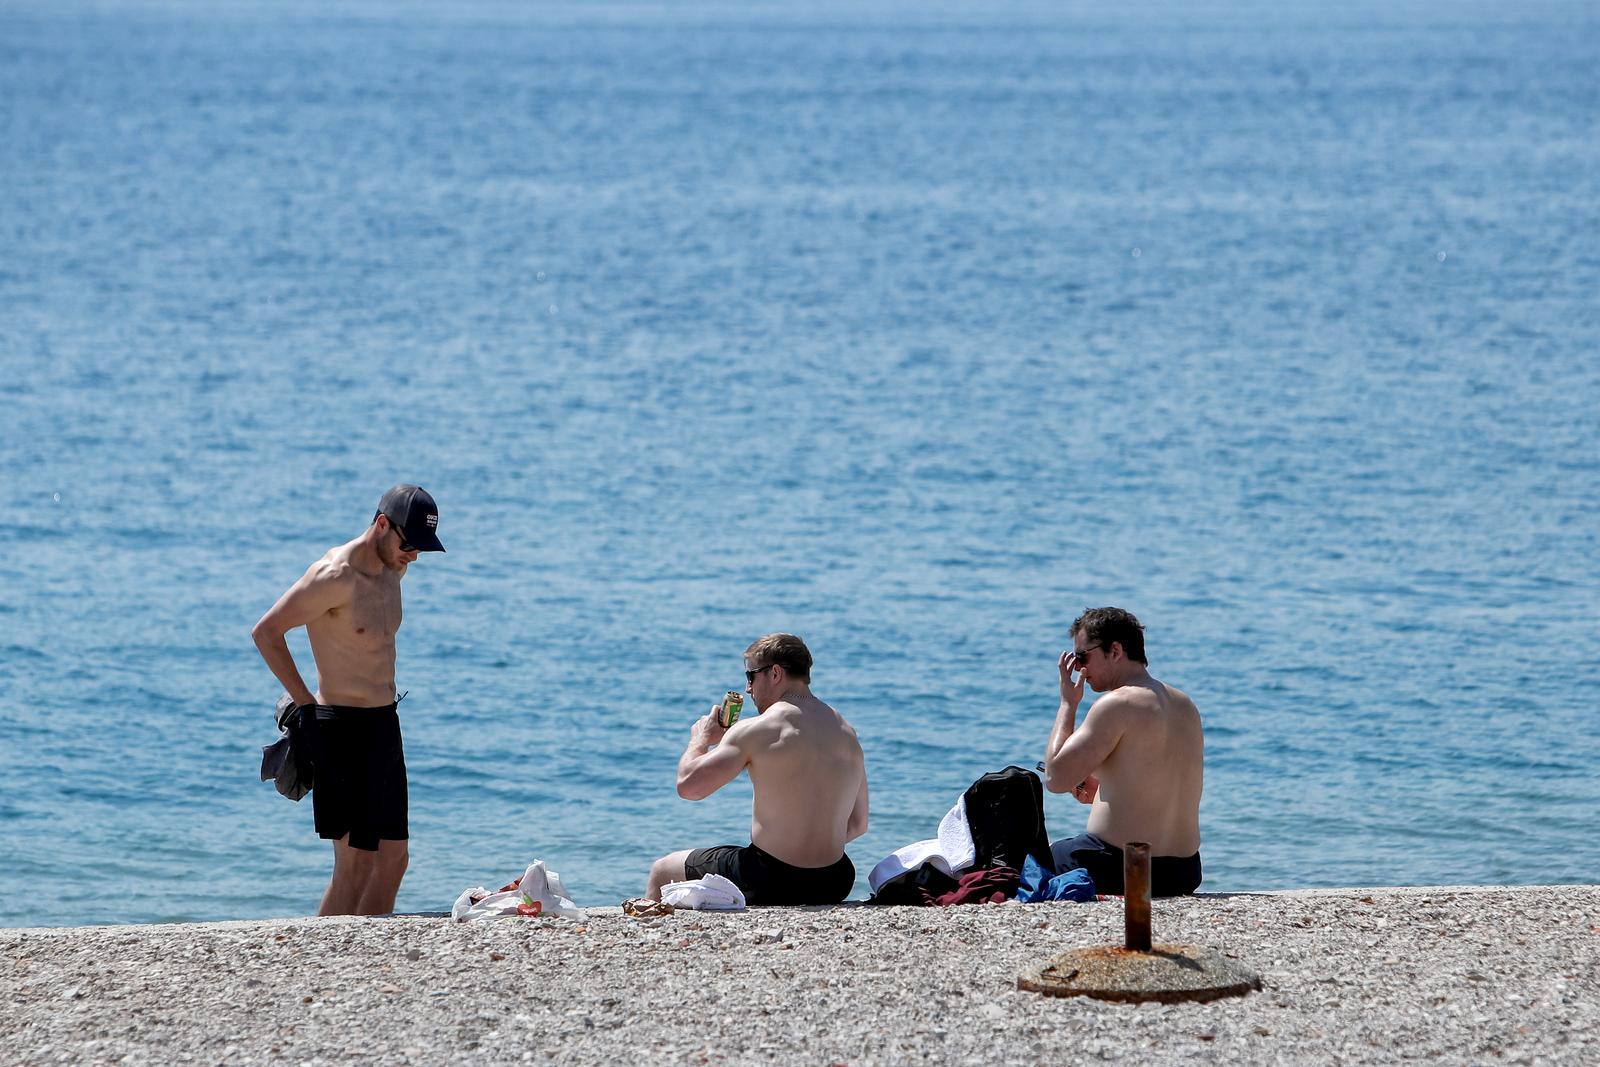 21.04.2023., Zadar - Zadrani i turisti uzivaju u suncanju na plazi. Photo: Sime Zelic/PIXSELL